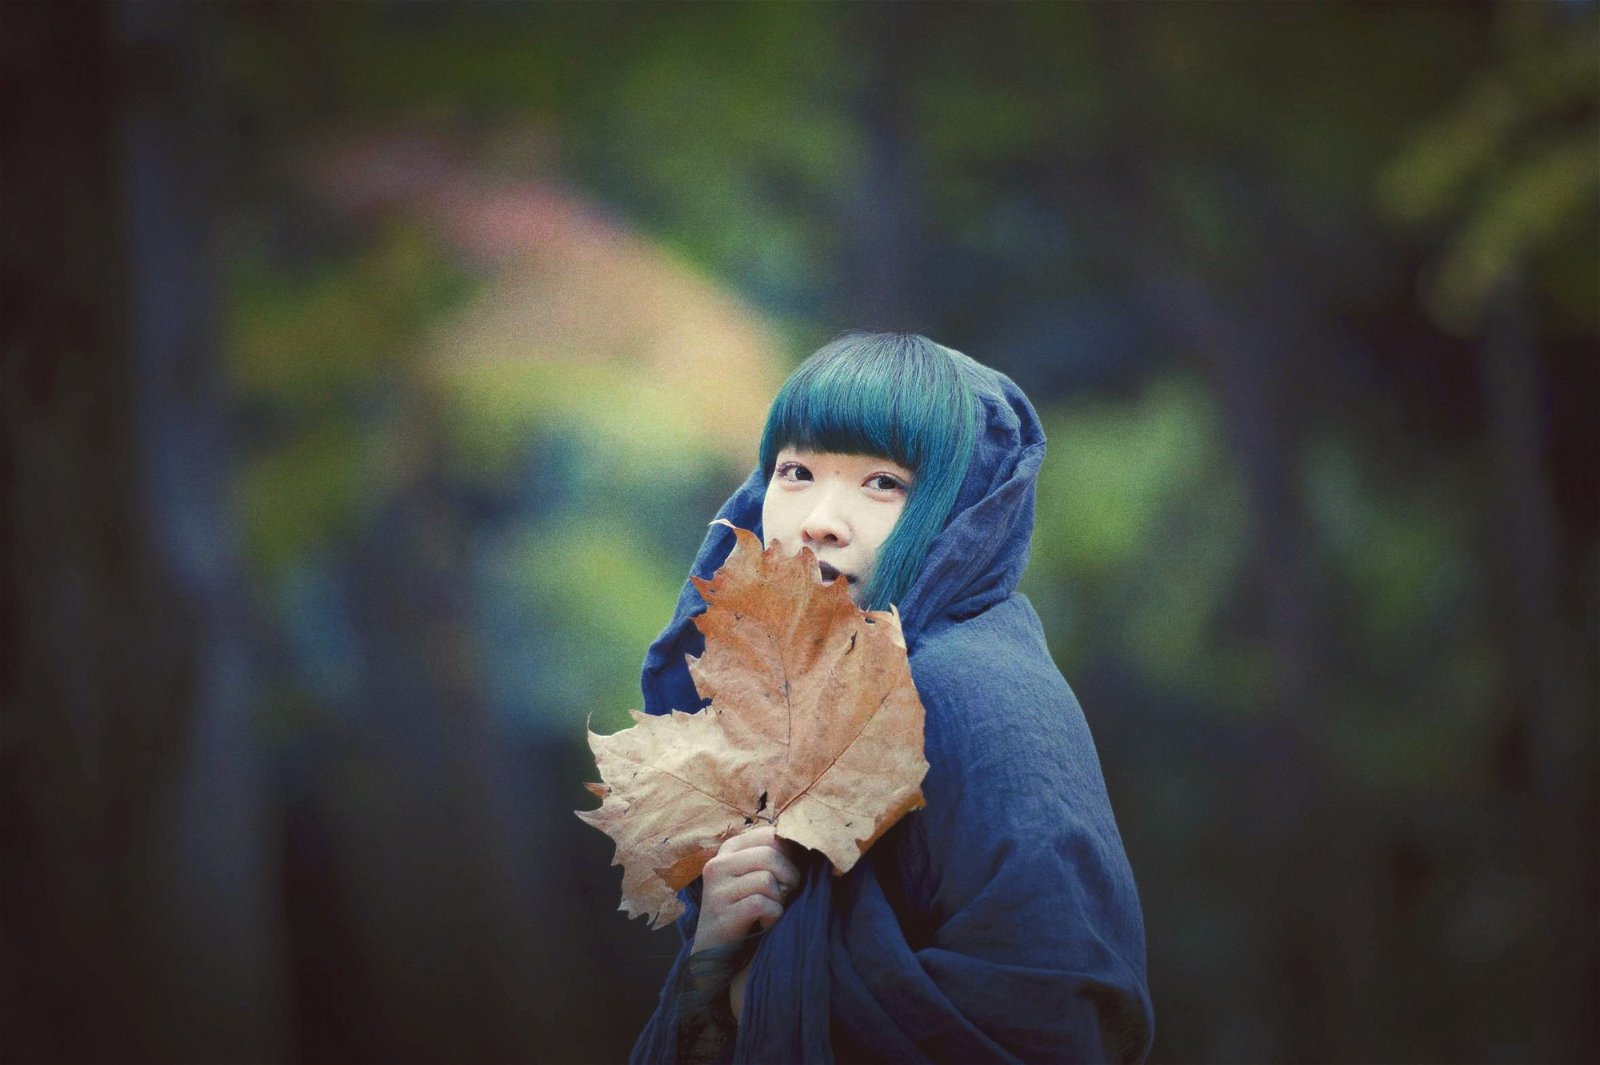 日本森林系唱作人青叶市子（Ichiko Aoba）空灵的歌声和民谣音乐风格辨识度极高，中国媒体曾这么形容她的演出：“现场在她的歌声中，变成一座有著晨间露水的森林。”